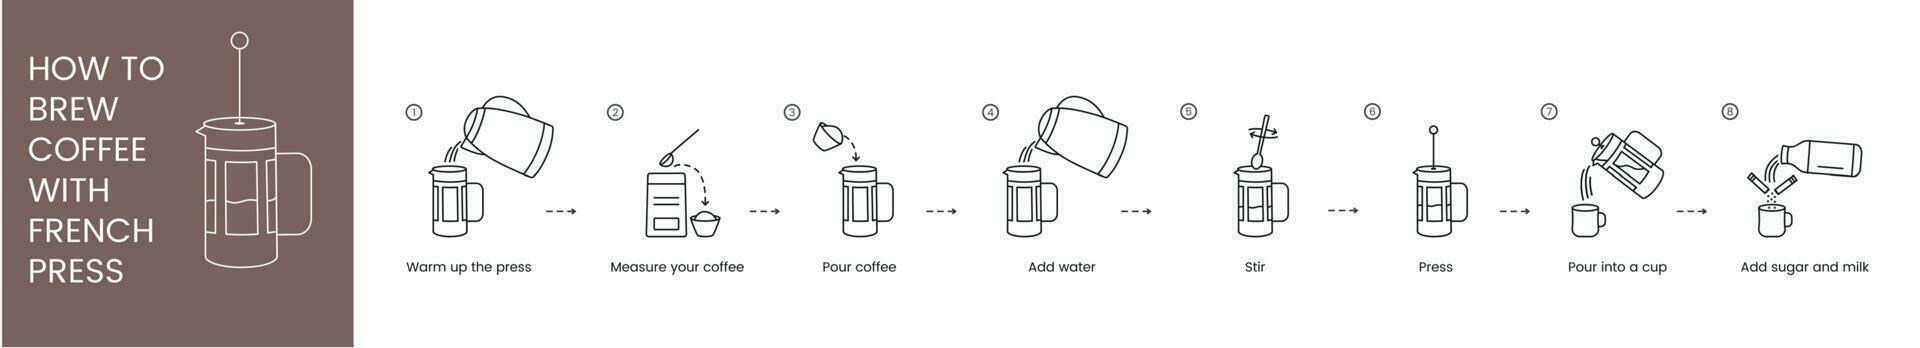 instructions sur Comment à faire café dans une français presse, linéaire vecteur illustration.